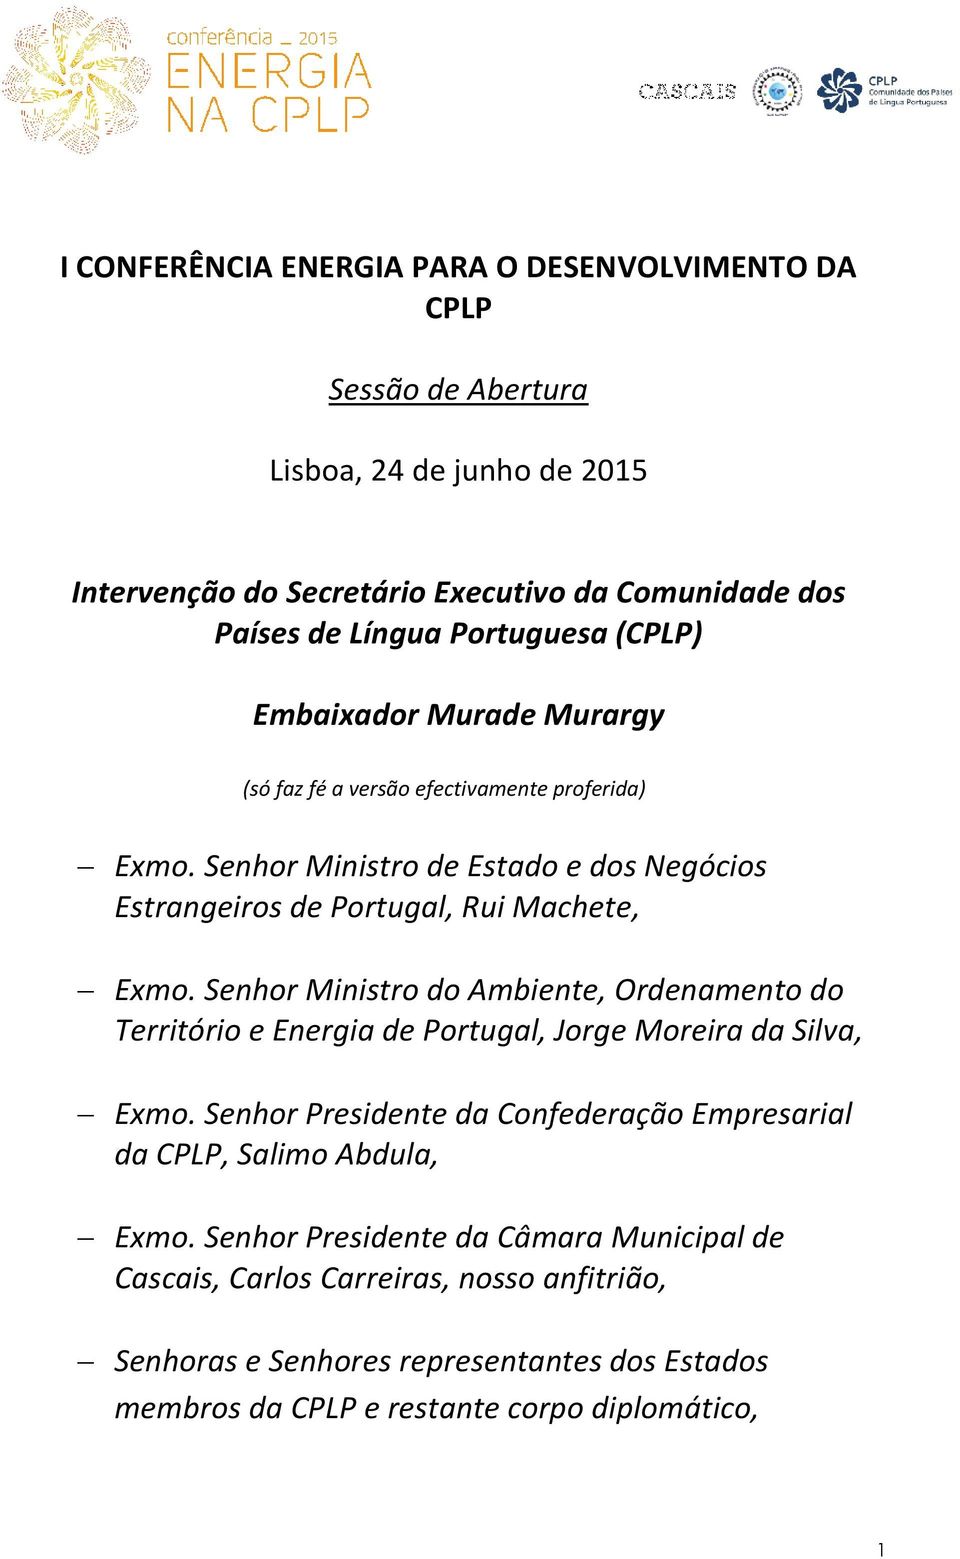 Senhor Ministro de Estado e dos Negócios Estrangeiros de Portugal, Rui Machete, Exmo.